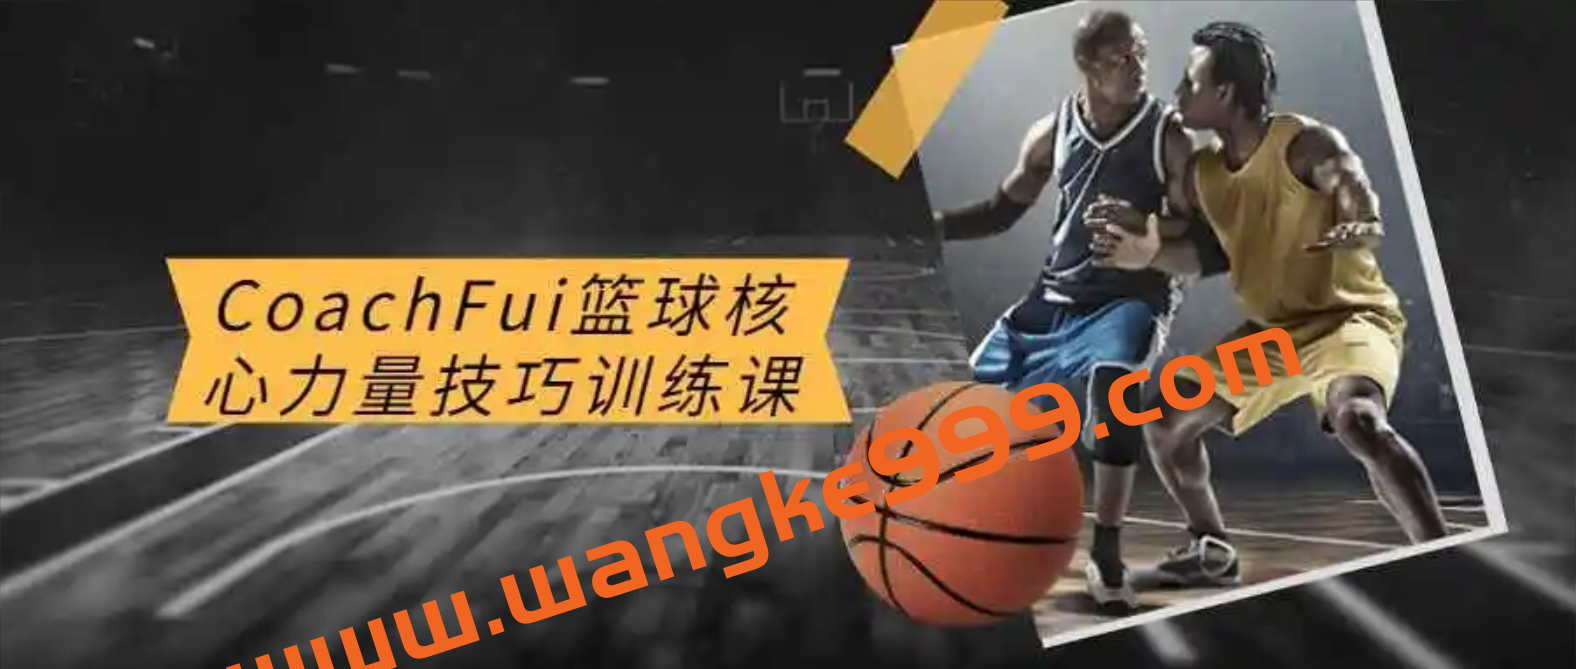 CoachFui：篮球核心力量技巧训练課程插图